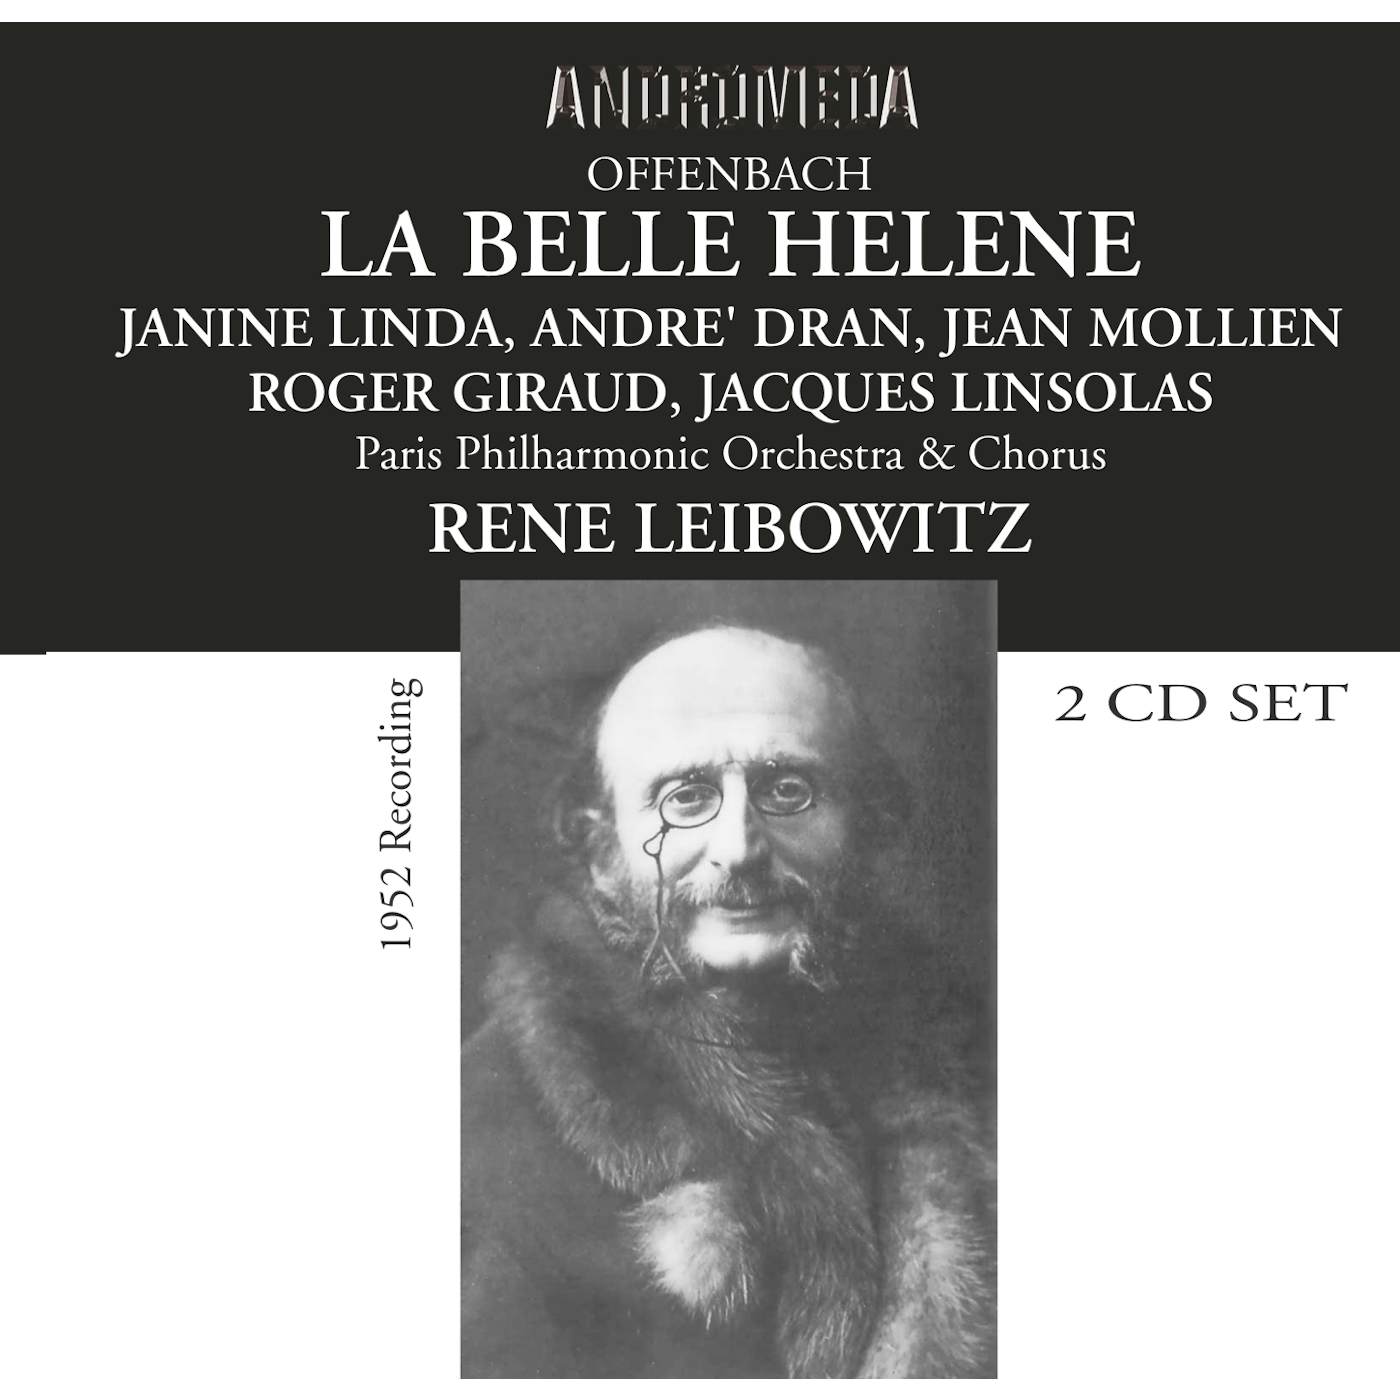 Offenbach LA BELLE HELENE CD